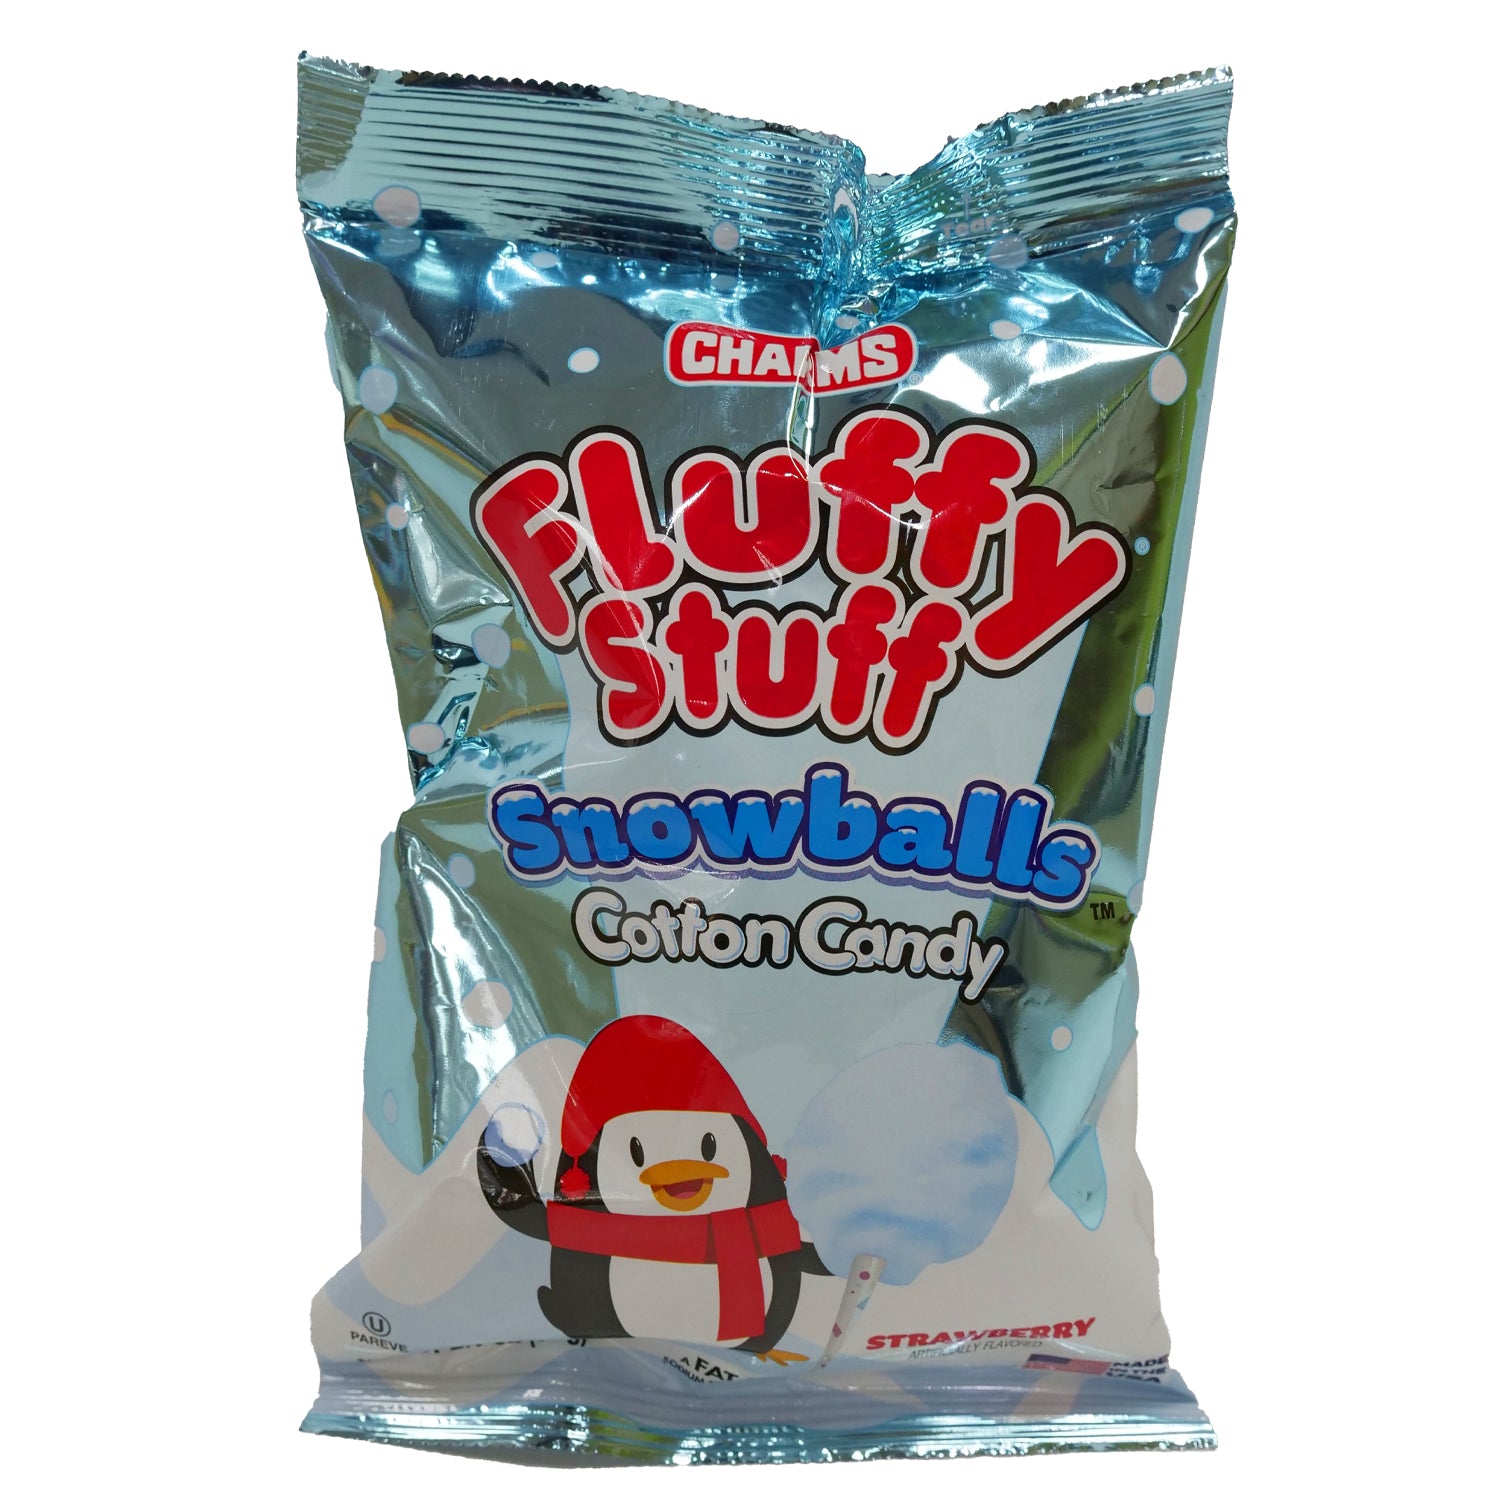 fluffy stuff cotton